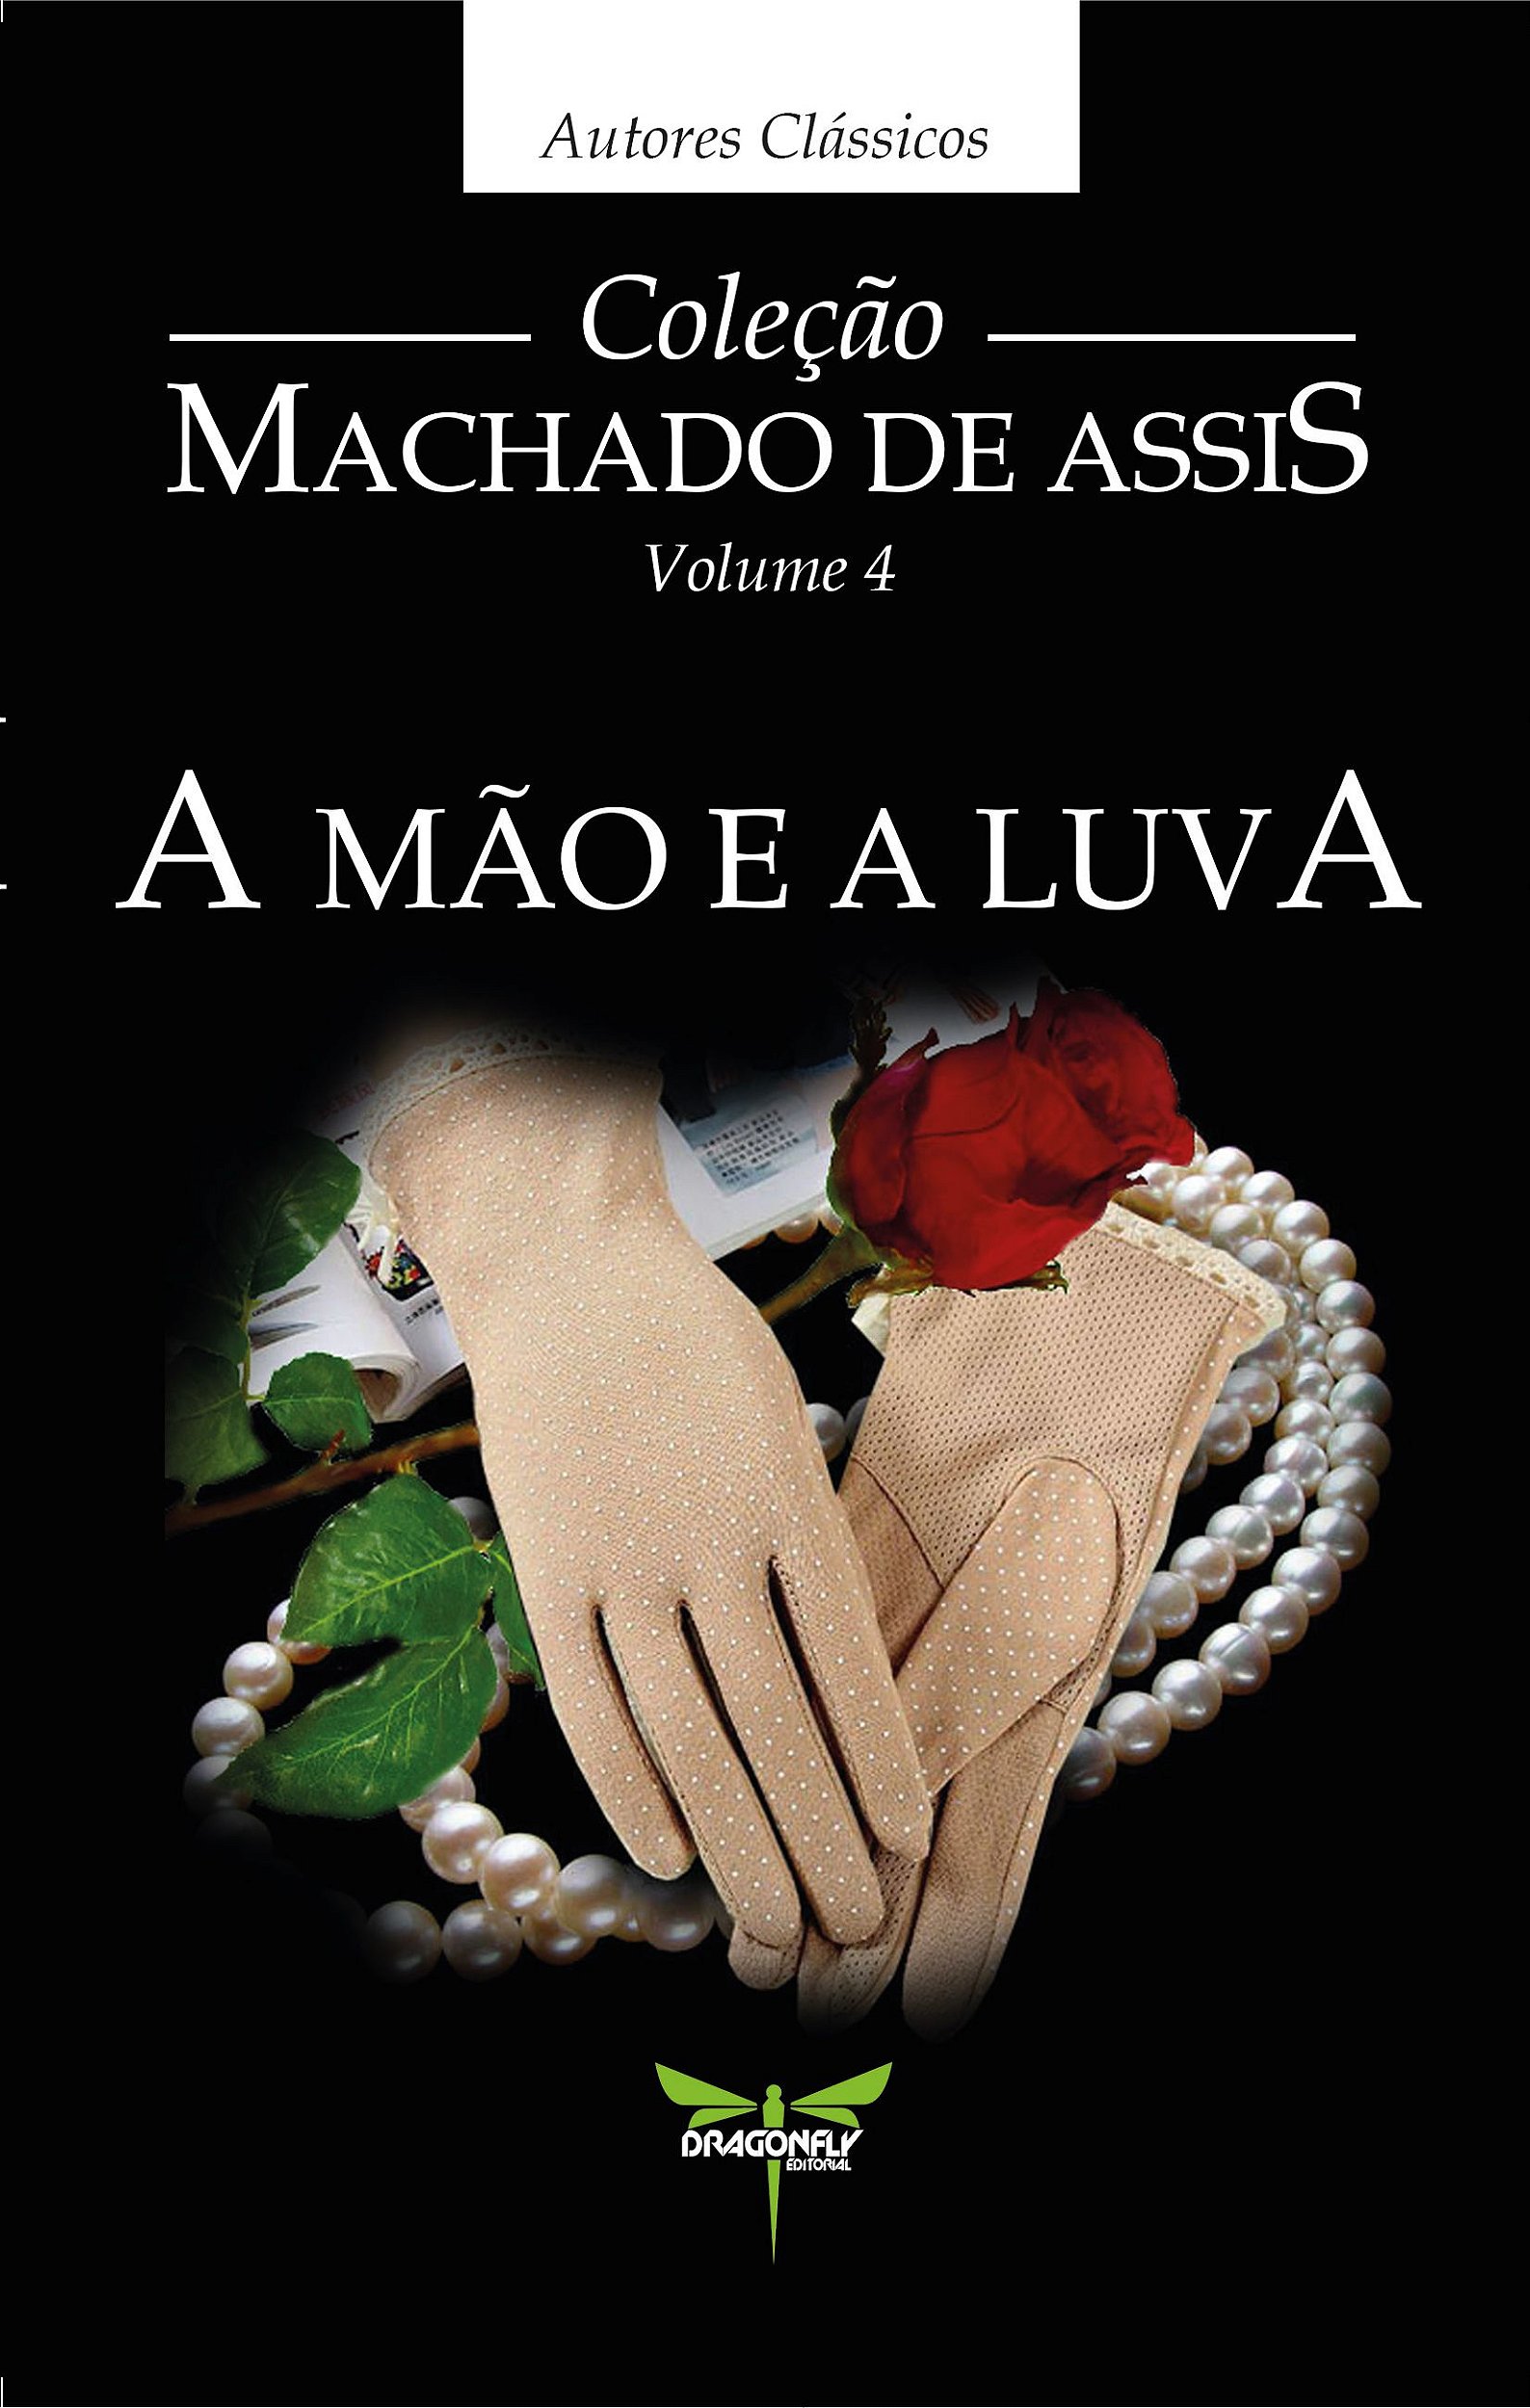 A Mão e a Luva ebook by Machado de Assis - Rakuten Kobo